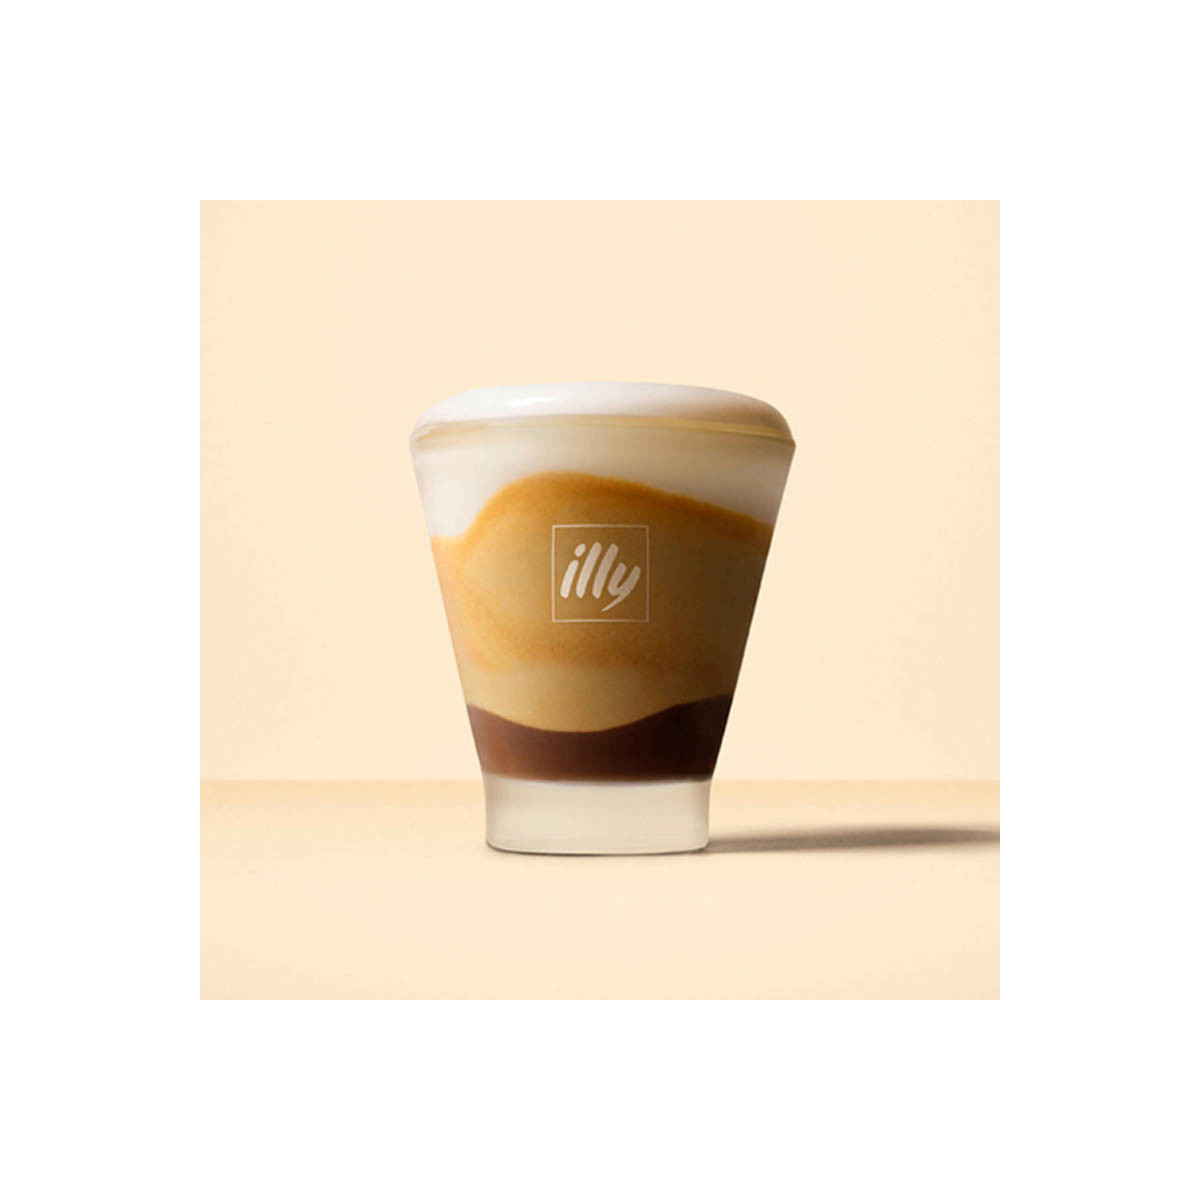 Acheter Illy espresso tasse et sous tasse (60ml) en ligne